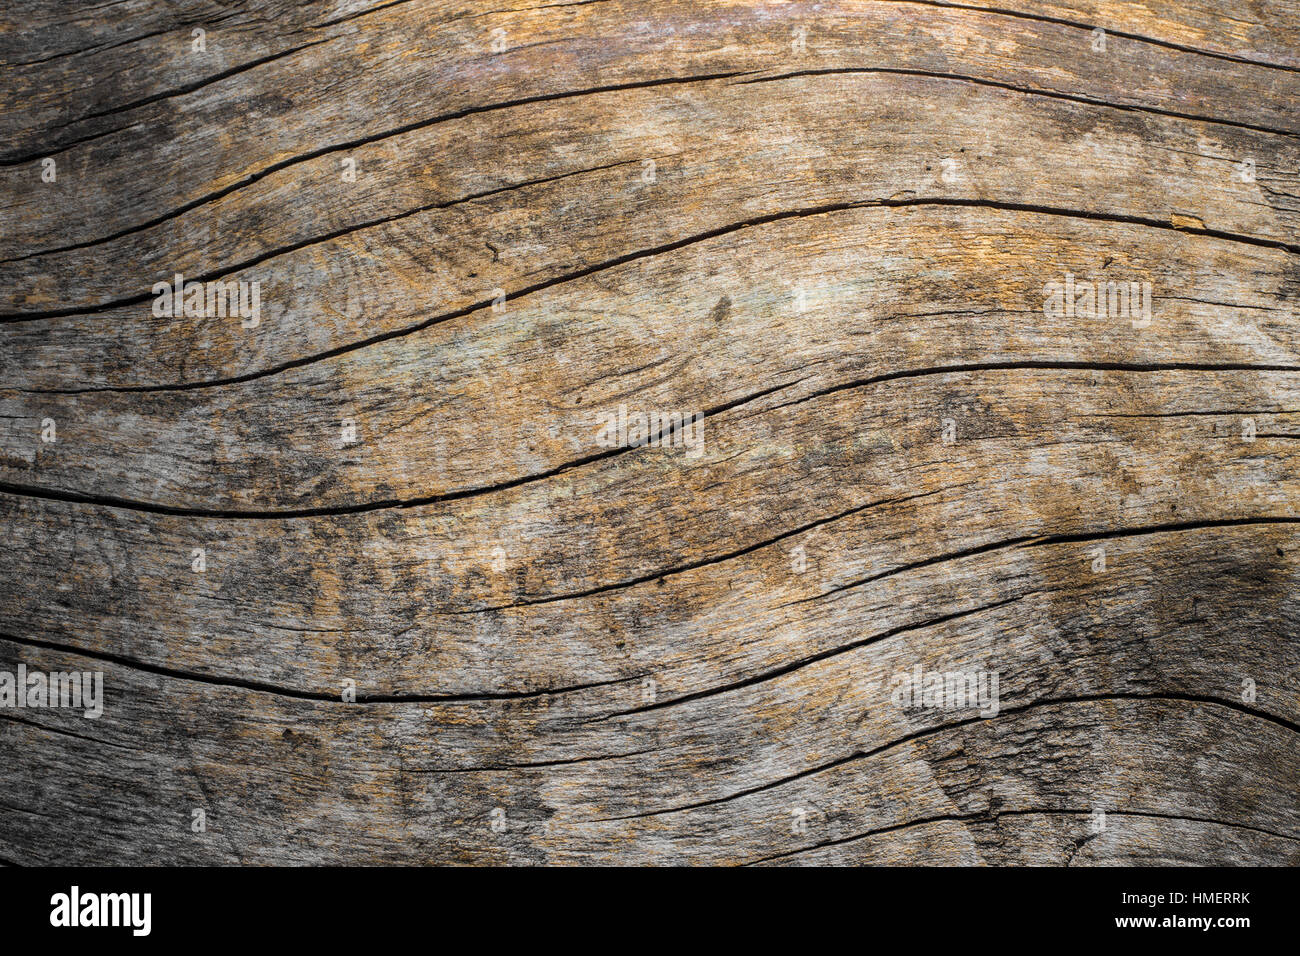 Texture de grain de bois naturel avec des lignes courbes Banque D'Images